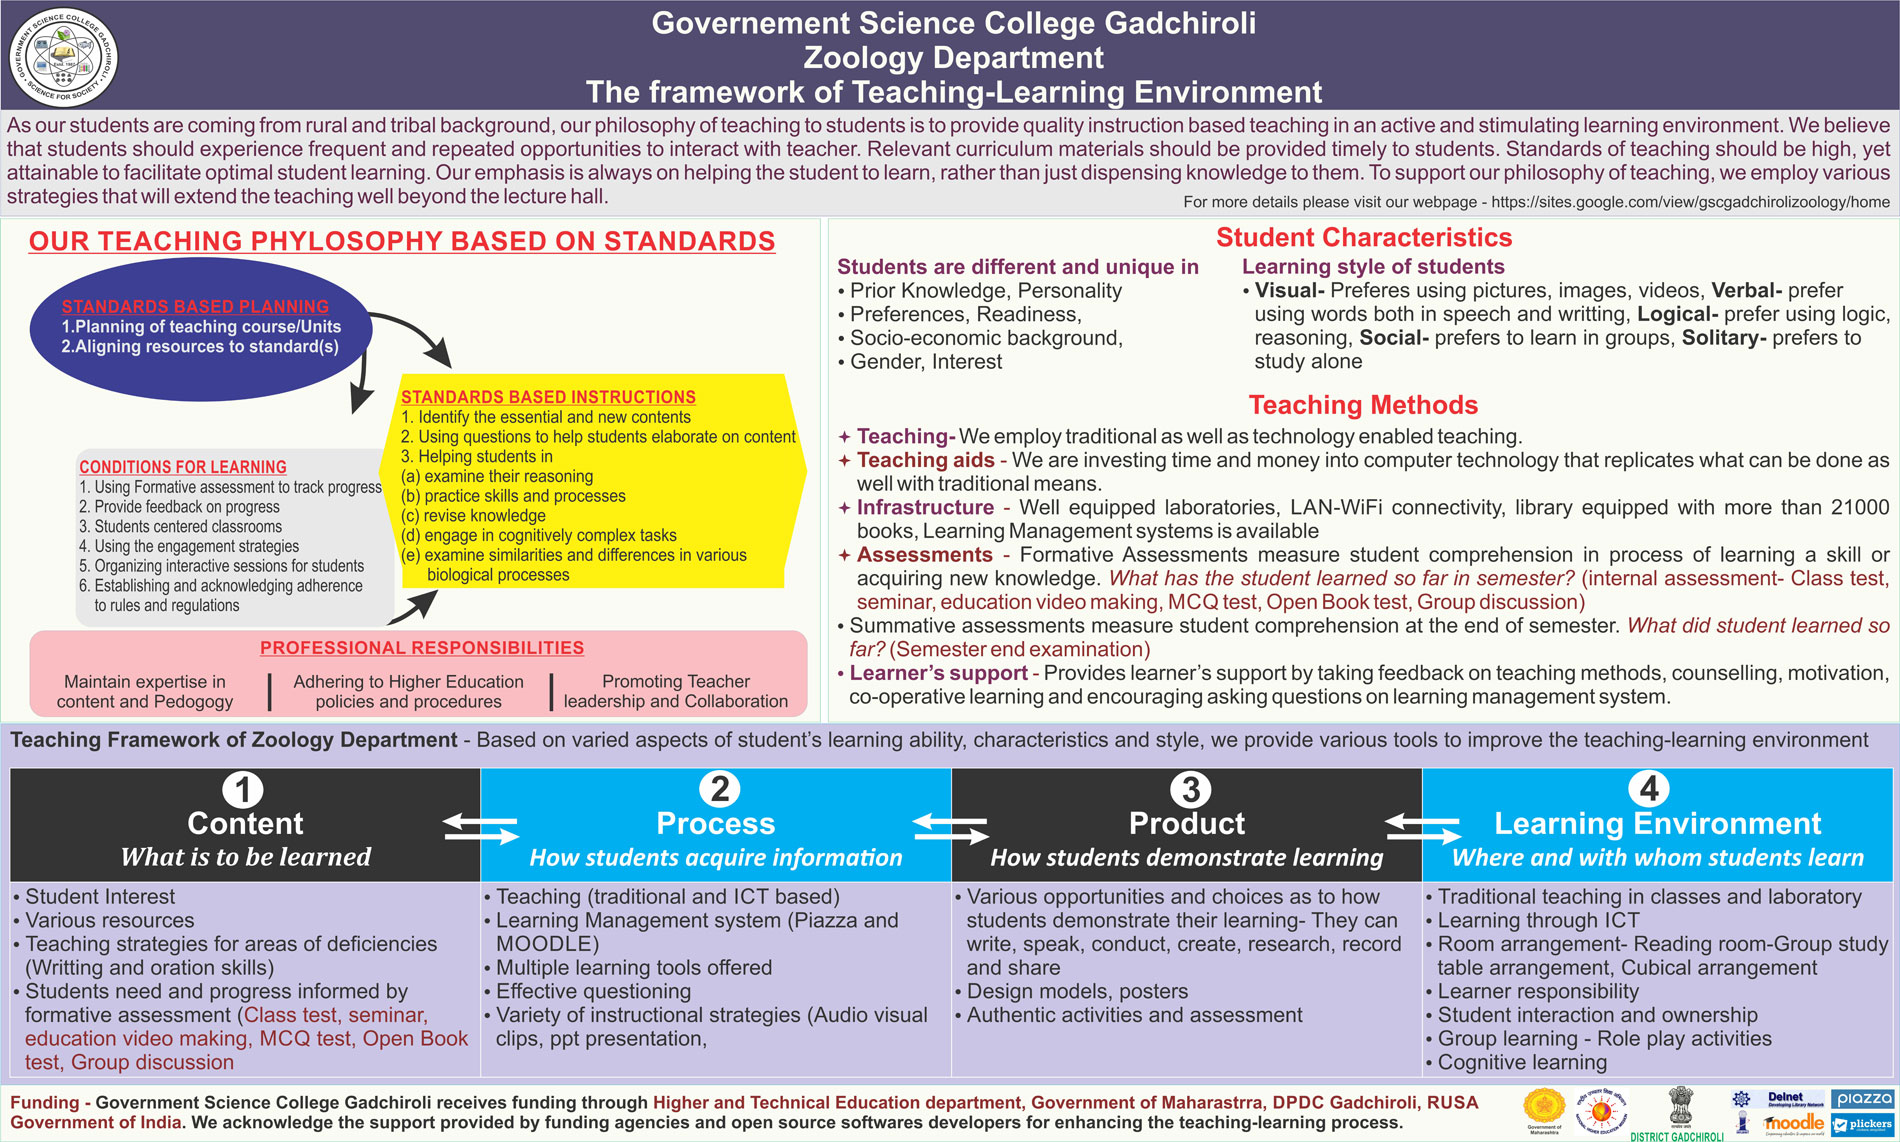 Framework of Teaching - Learning Environment